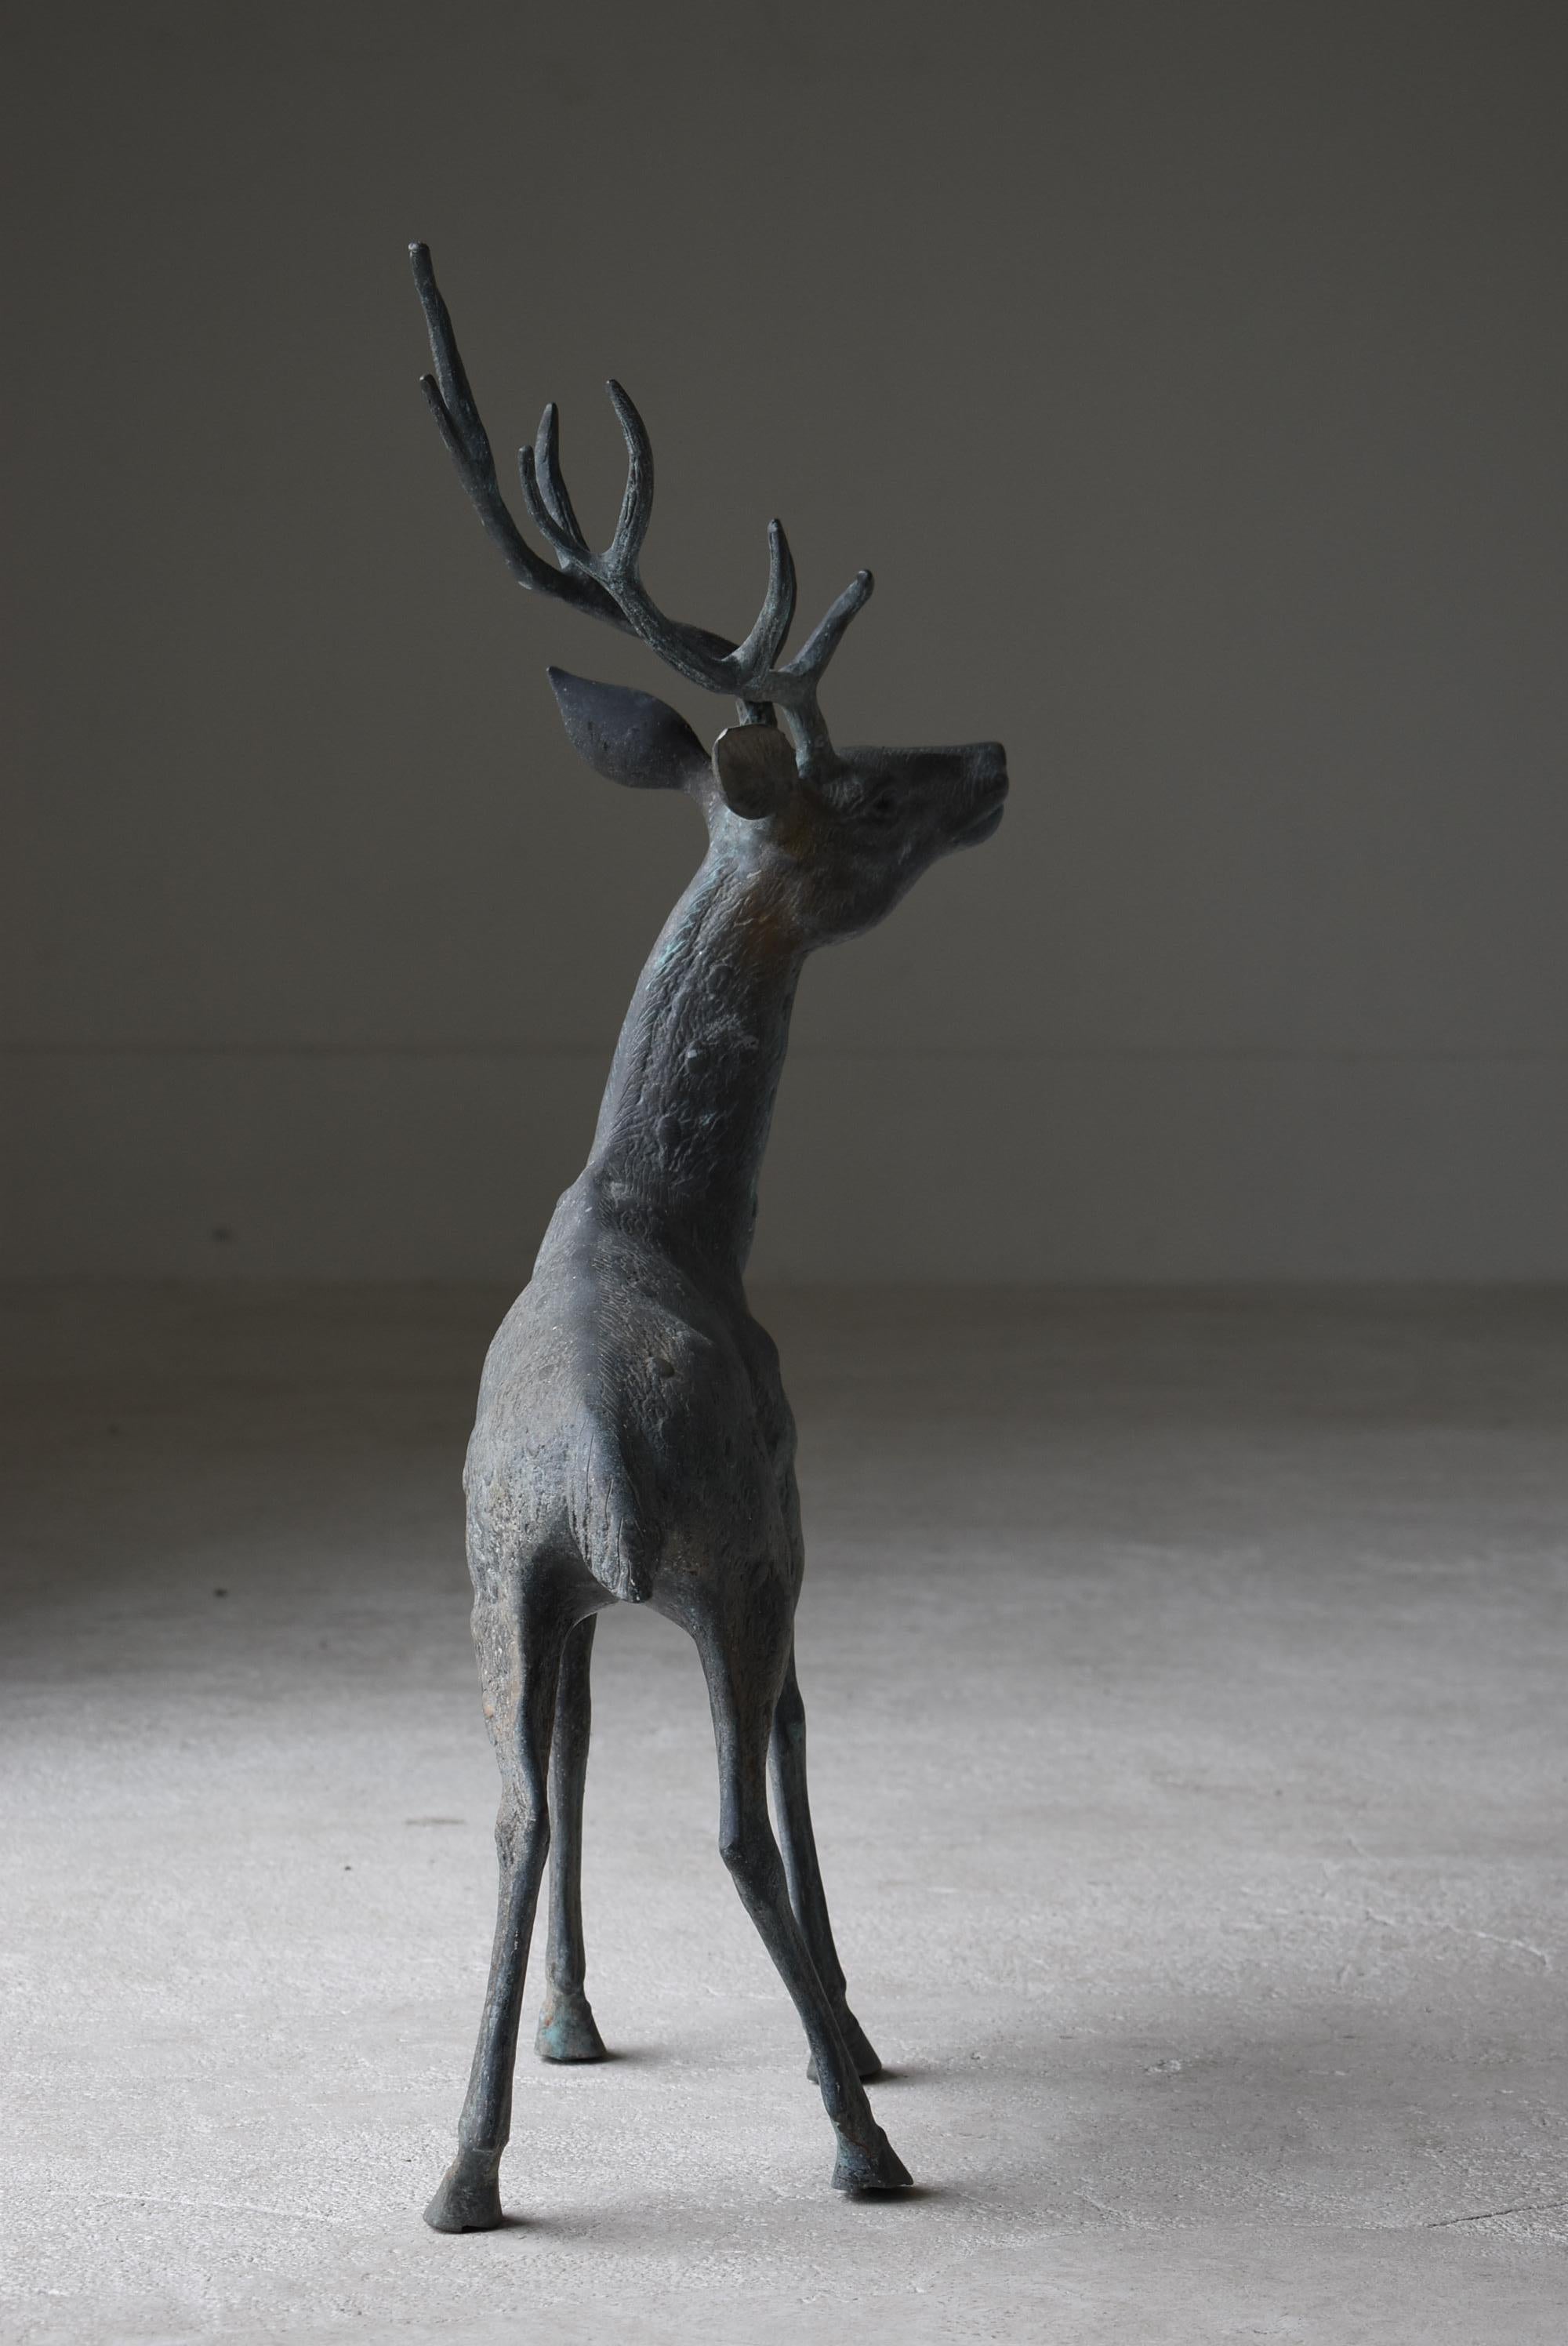 Japanese Old Copper Deer Object/Vintage Figurine Animal Decor Decoration Art 8